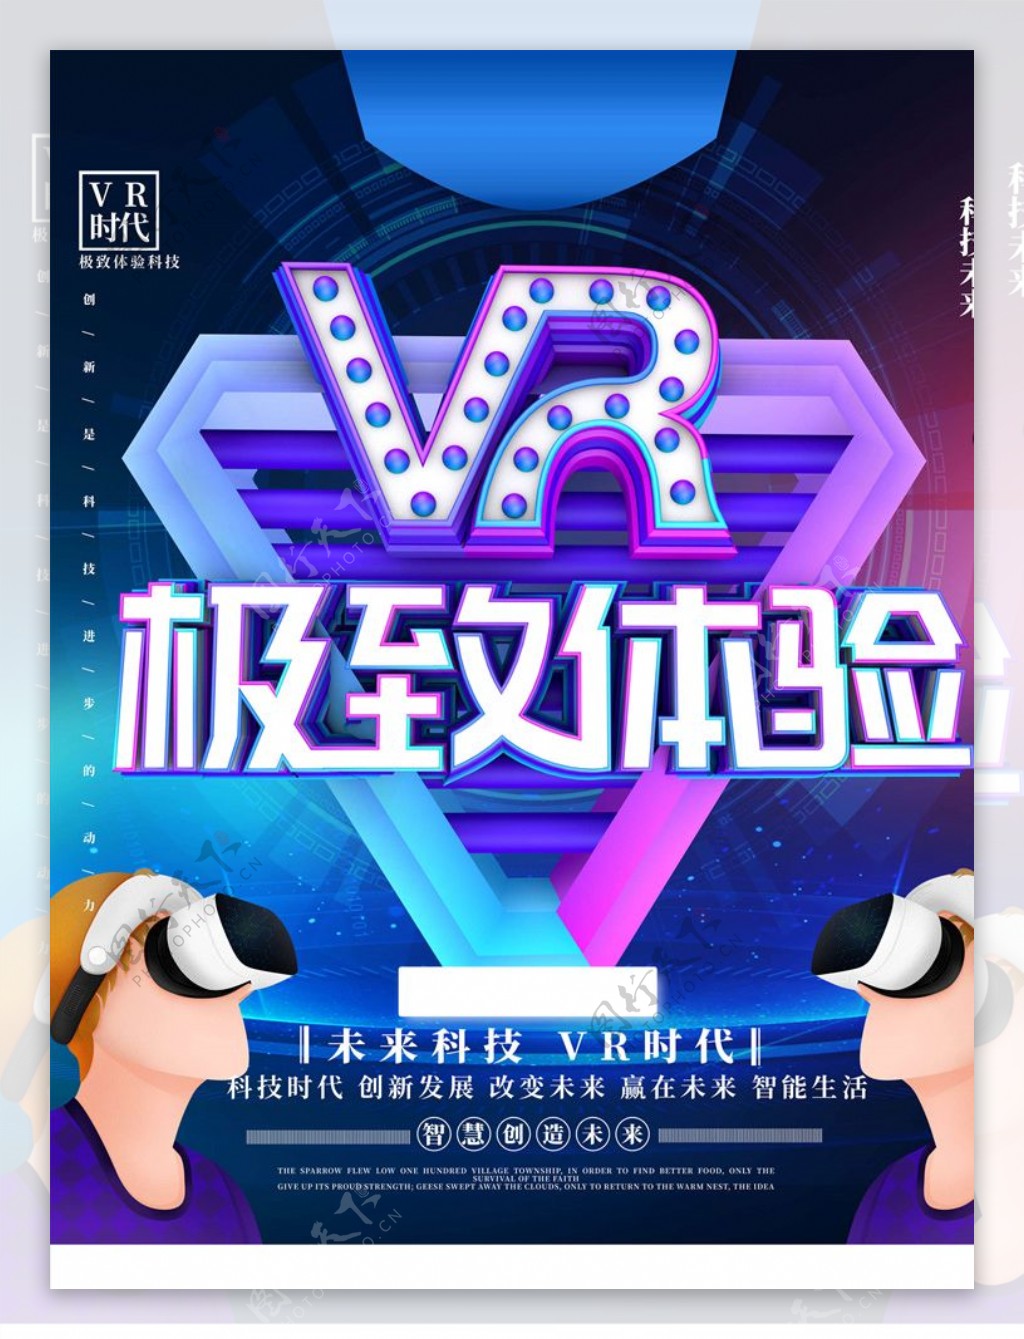 VR虚拟现实图片